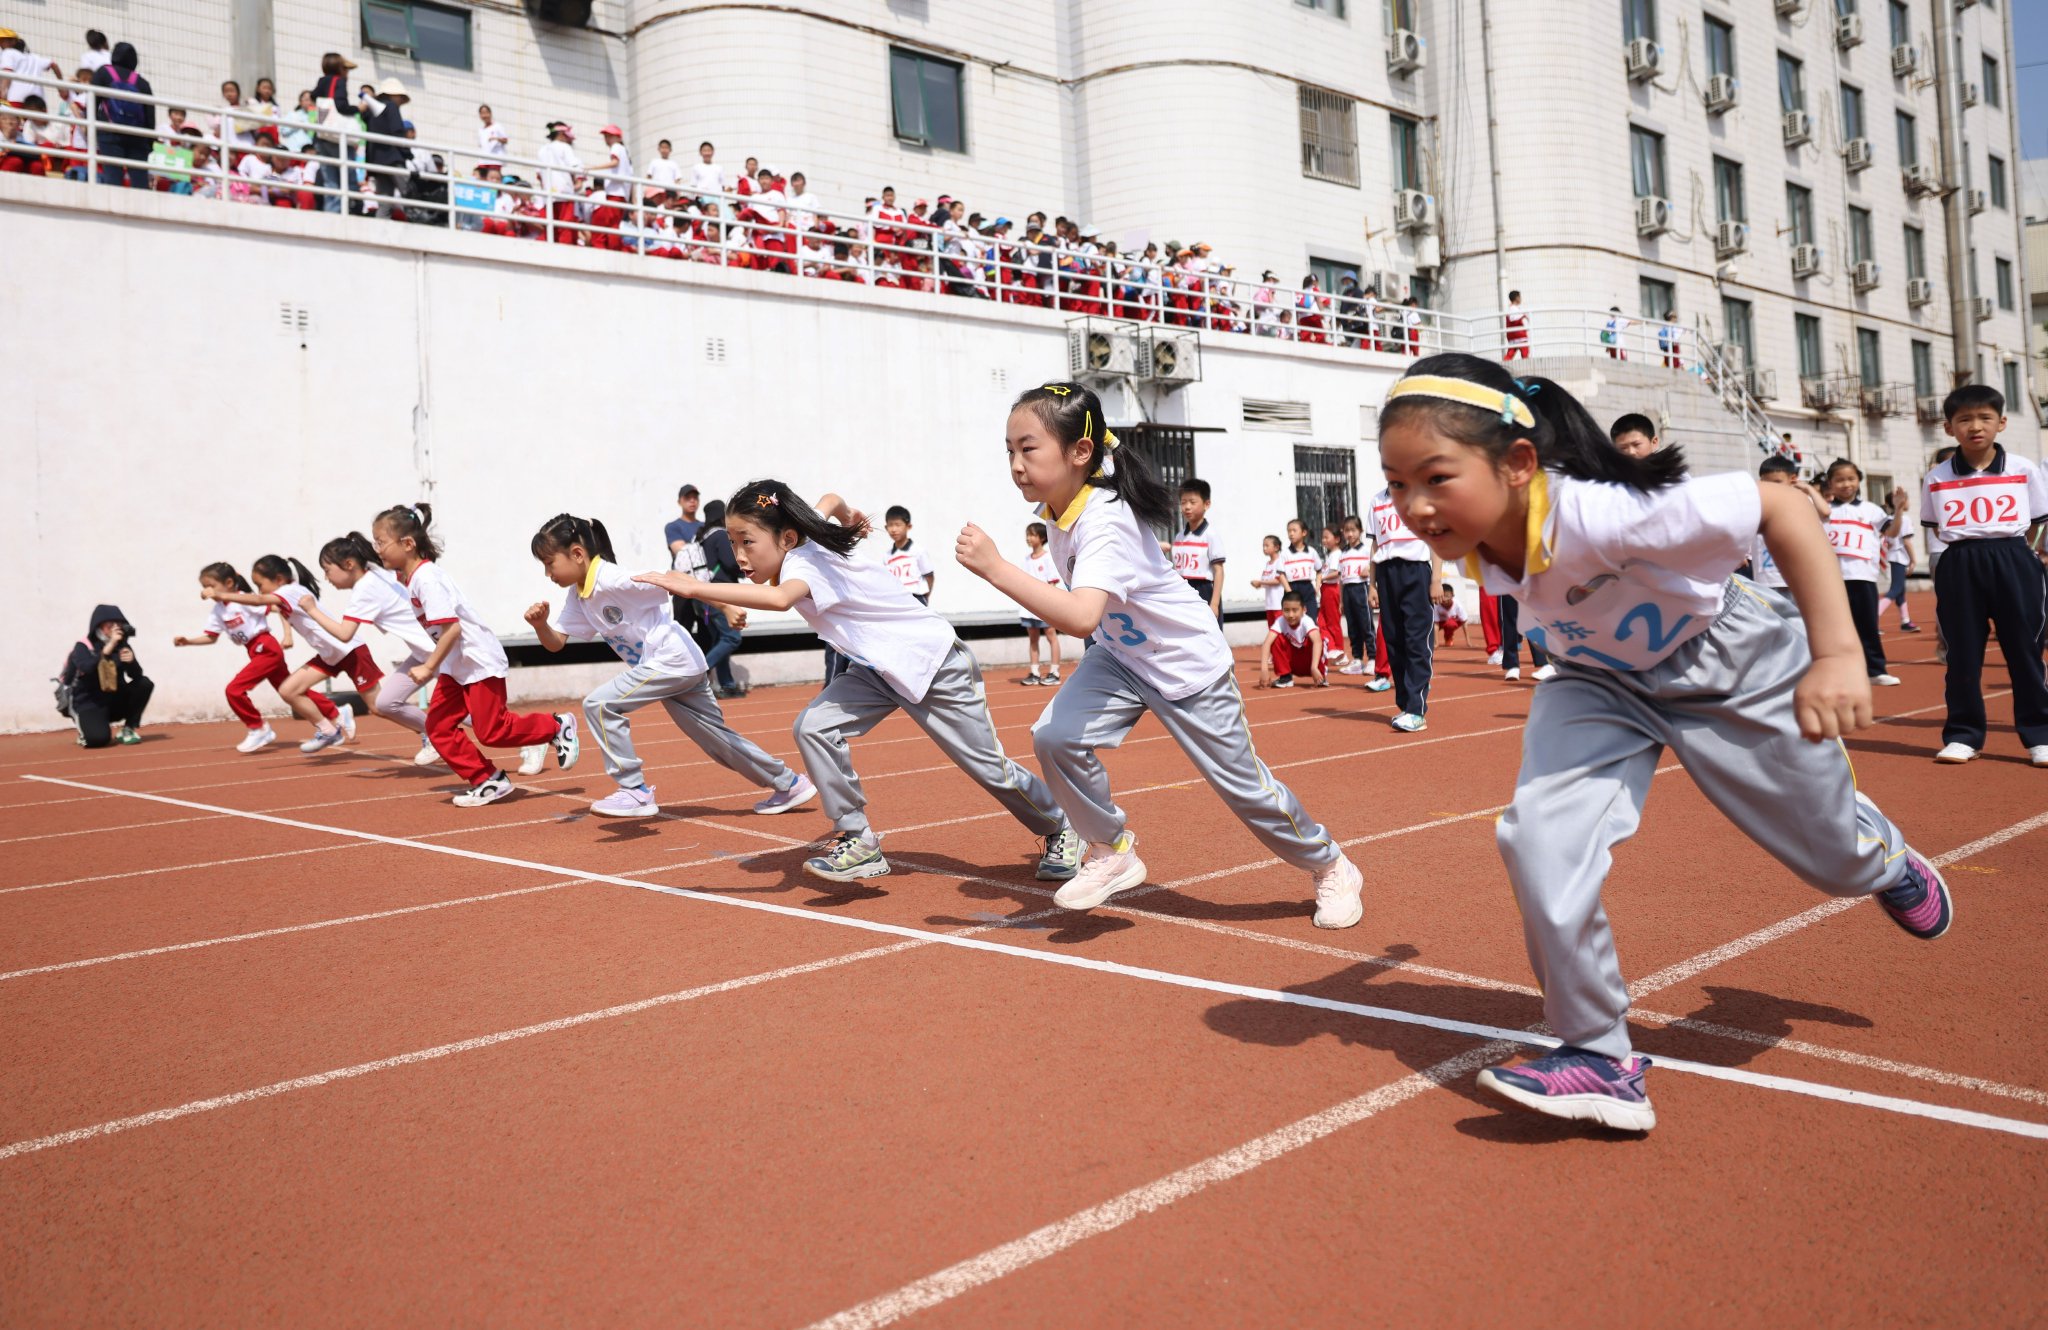 小運動員們參加短跑項目。新京報記者李木易 攝